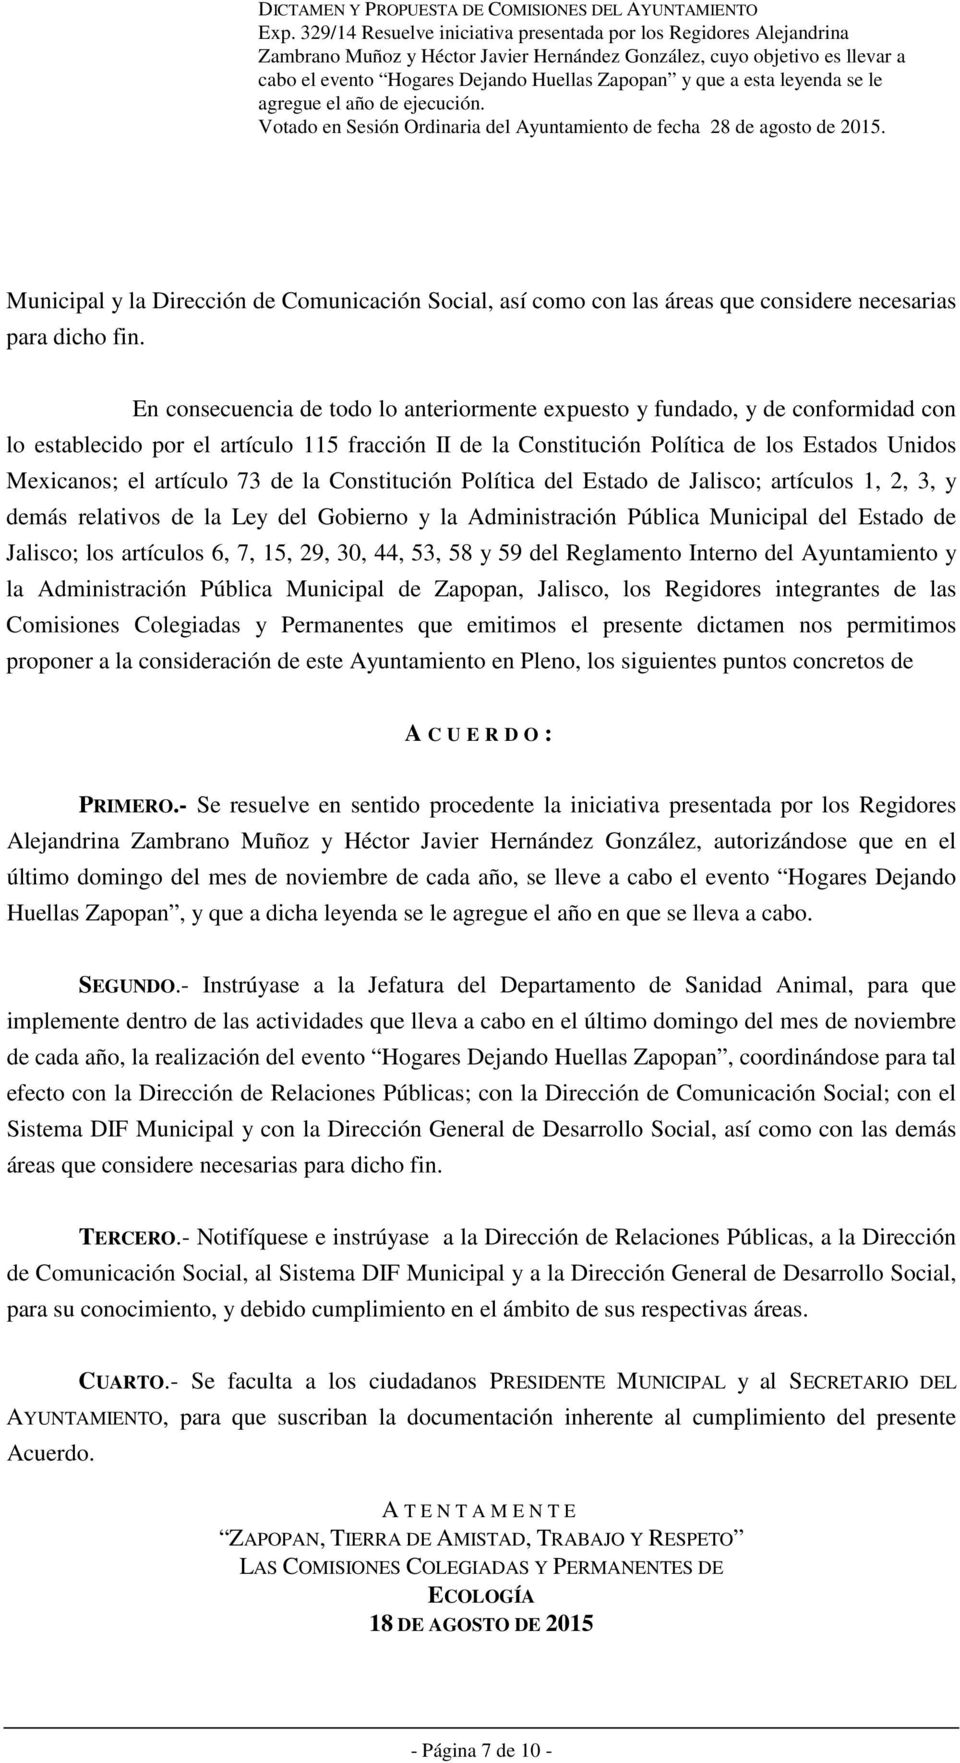 artículo 73 de la Constitución Política del Estado de Jalisco; artículos 1, 2, 3, y demás relativos de la Ley del Gobierno y la Administración Pública Municipal del Estado de Jalisco; los artículos